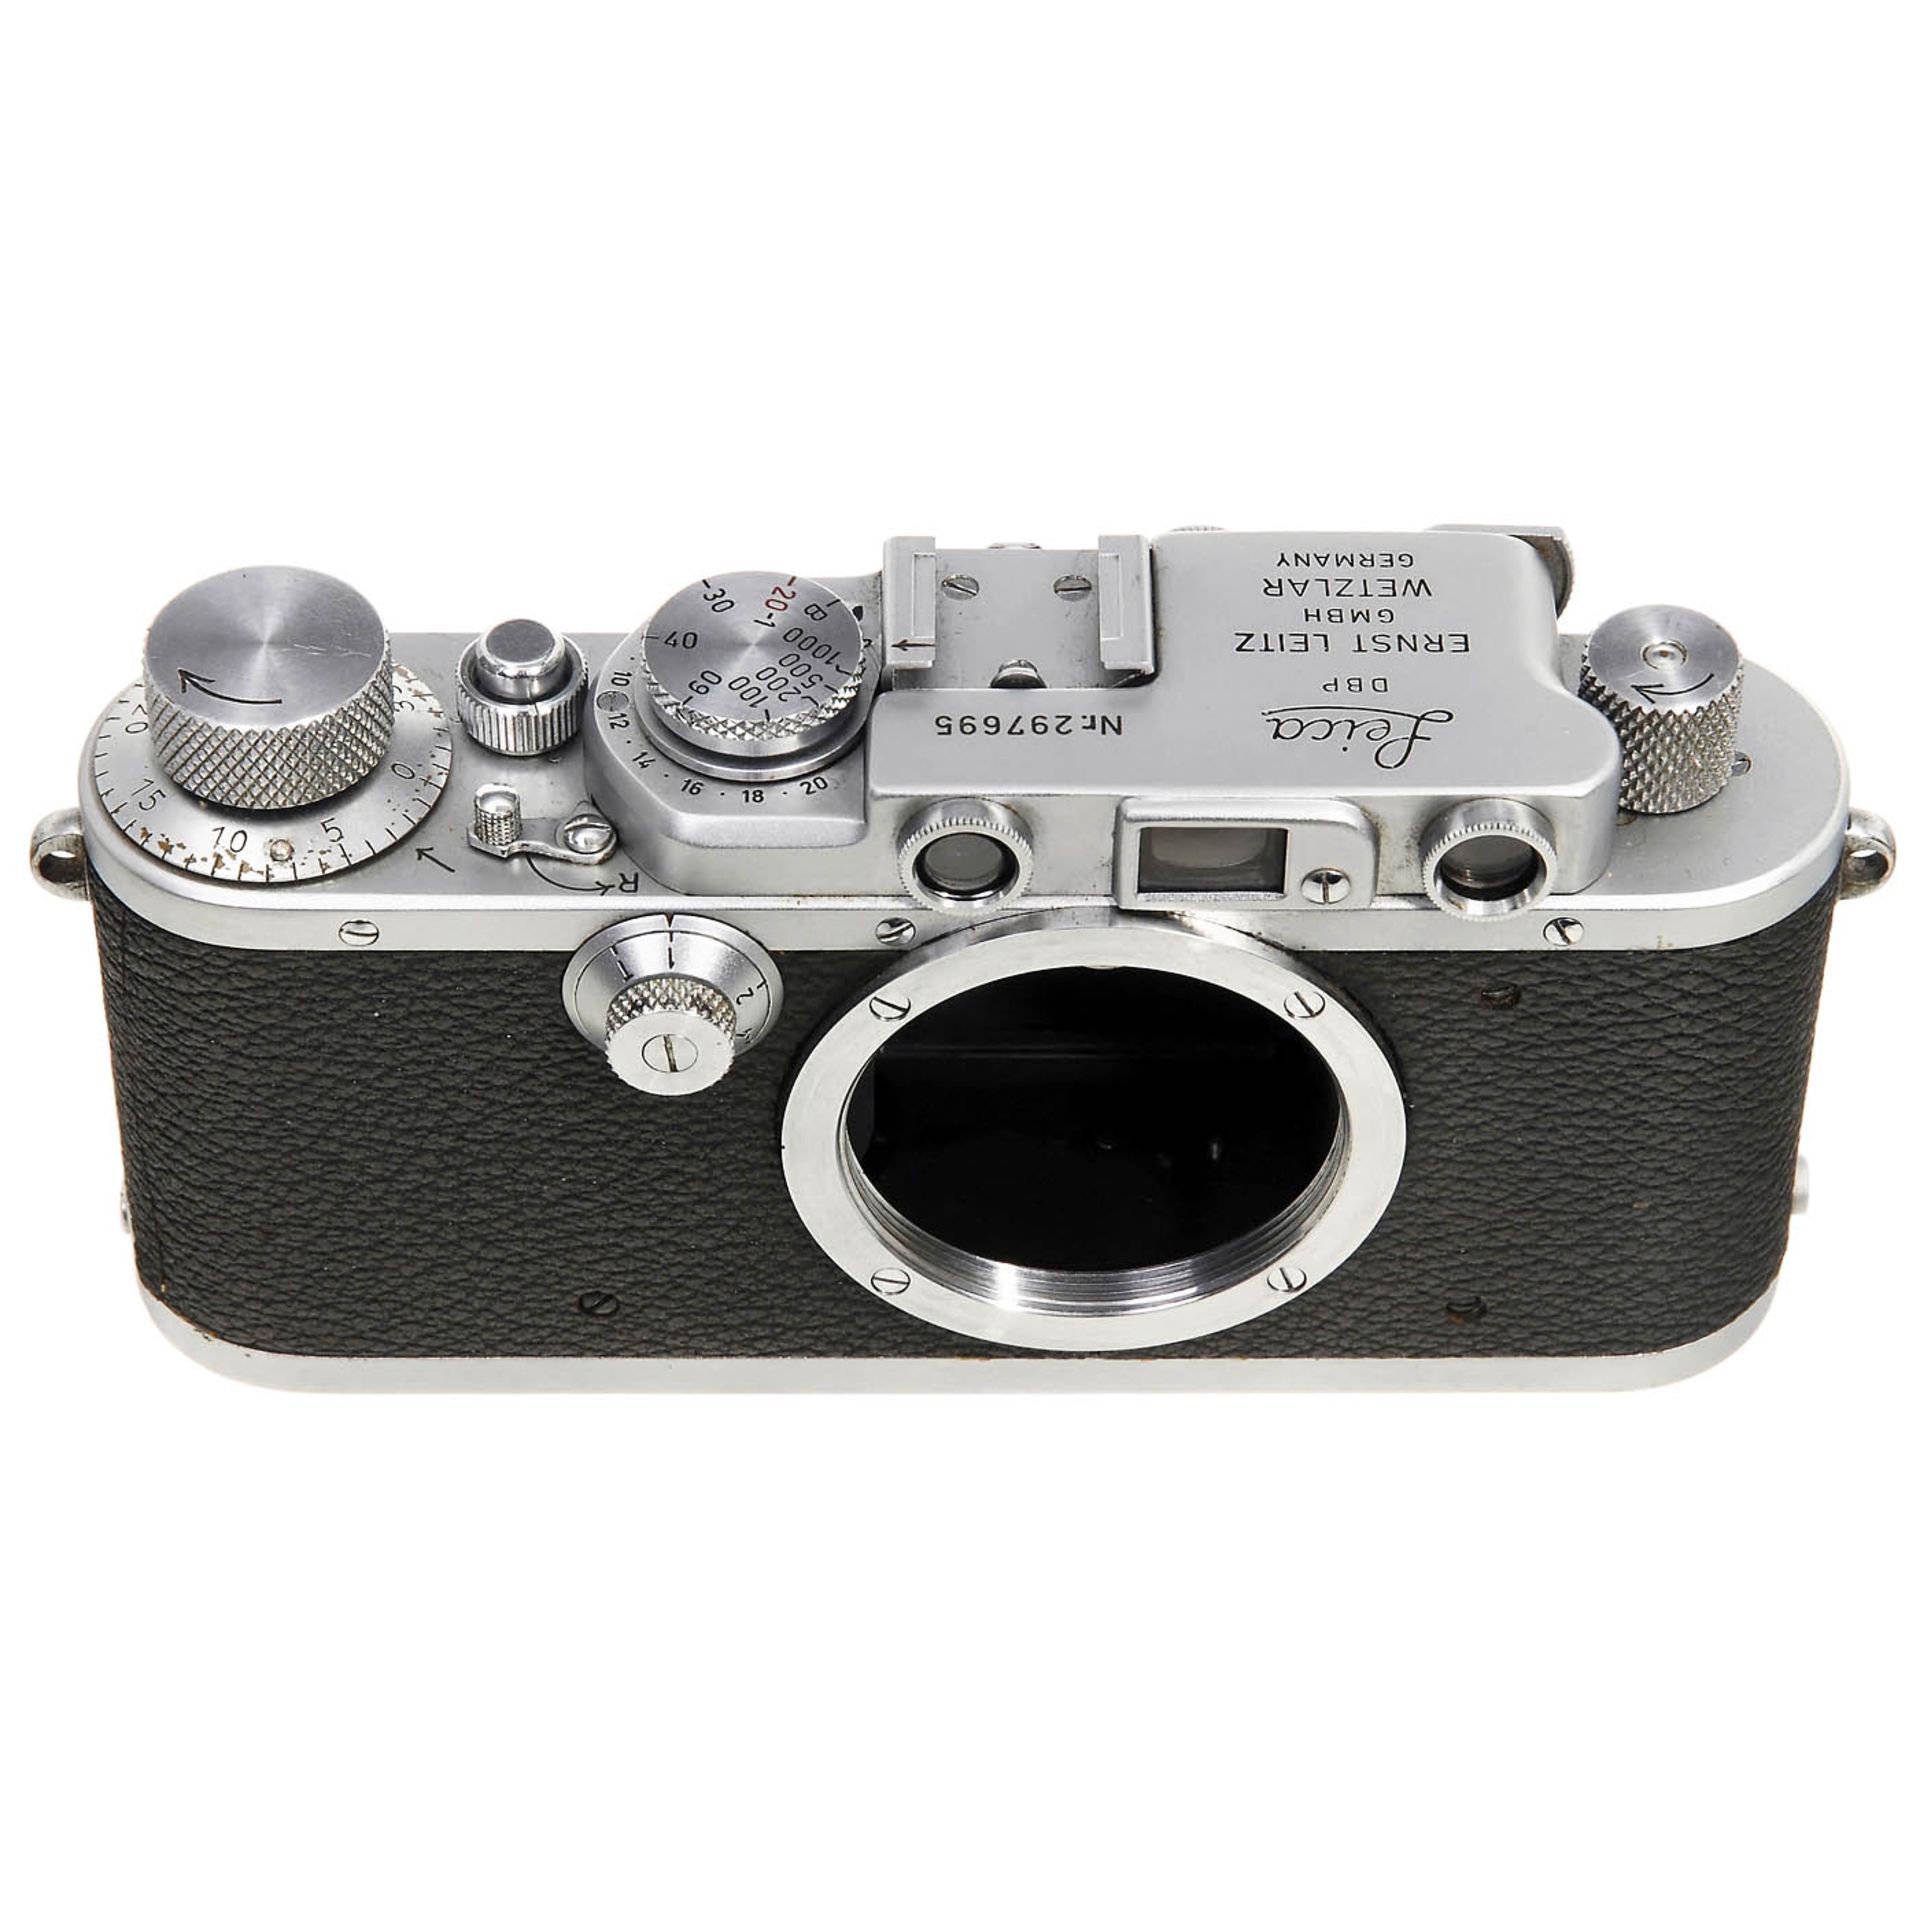 Leica IIIa Gehäuse, synchronisiert, um 1938